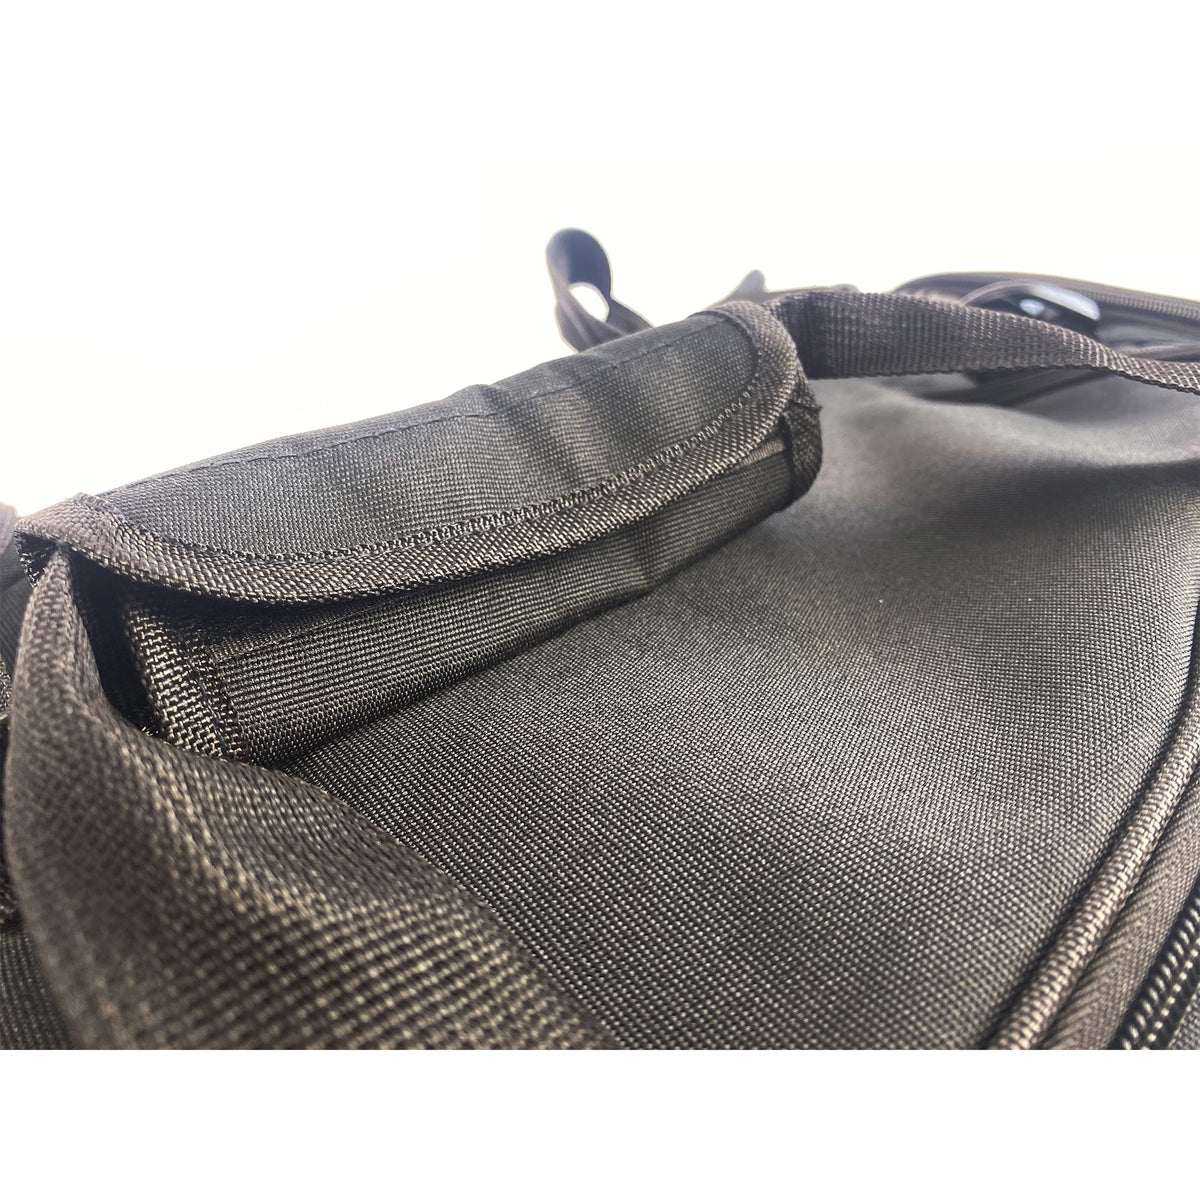 Griffe der Sporttasche, die zusätzlich mit einem Klettverschluss versehen sind, um das Tragen der Tasche zu erleichtern